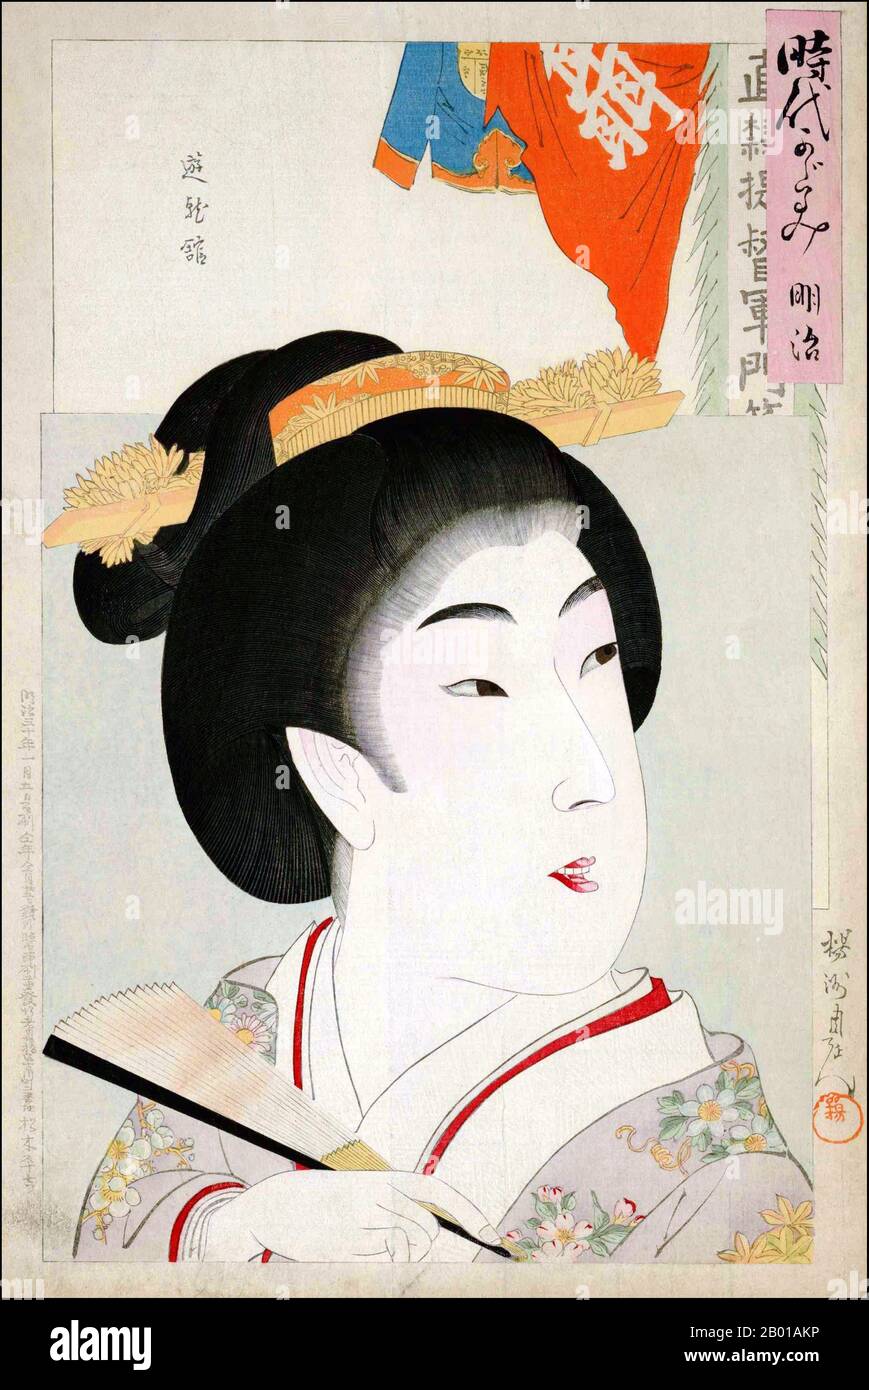 Japon : Portrait d'une Beauté (Bijinga). Impression de blocs de bois Ukiyo-e par Toyohara Chikanobu (1838-1912), 1897. Toyoyaha Chikanobu, également appelé Yoshu Chikanobu par ses pairs, était un peintre et graveur prolifique durant l'ère Meiji. Son vrai nom était Hashimoto Naoyoshi, et il a d'abord servi de garde militaire pour le Clan Sakakibara, luttant avec les loyalistes Tokugawa jusqu'à leur défaite et leur reddition. Par la suite, il est devenu artiste, étudiant sous différents professeurs. Il était particulièrement connu pour ses tirages bijinga. Bijinga est un terme générique pour les images de belles femmes dans l'art japonais Banque D'Images